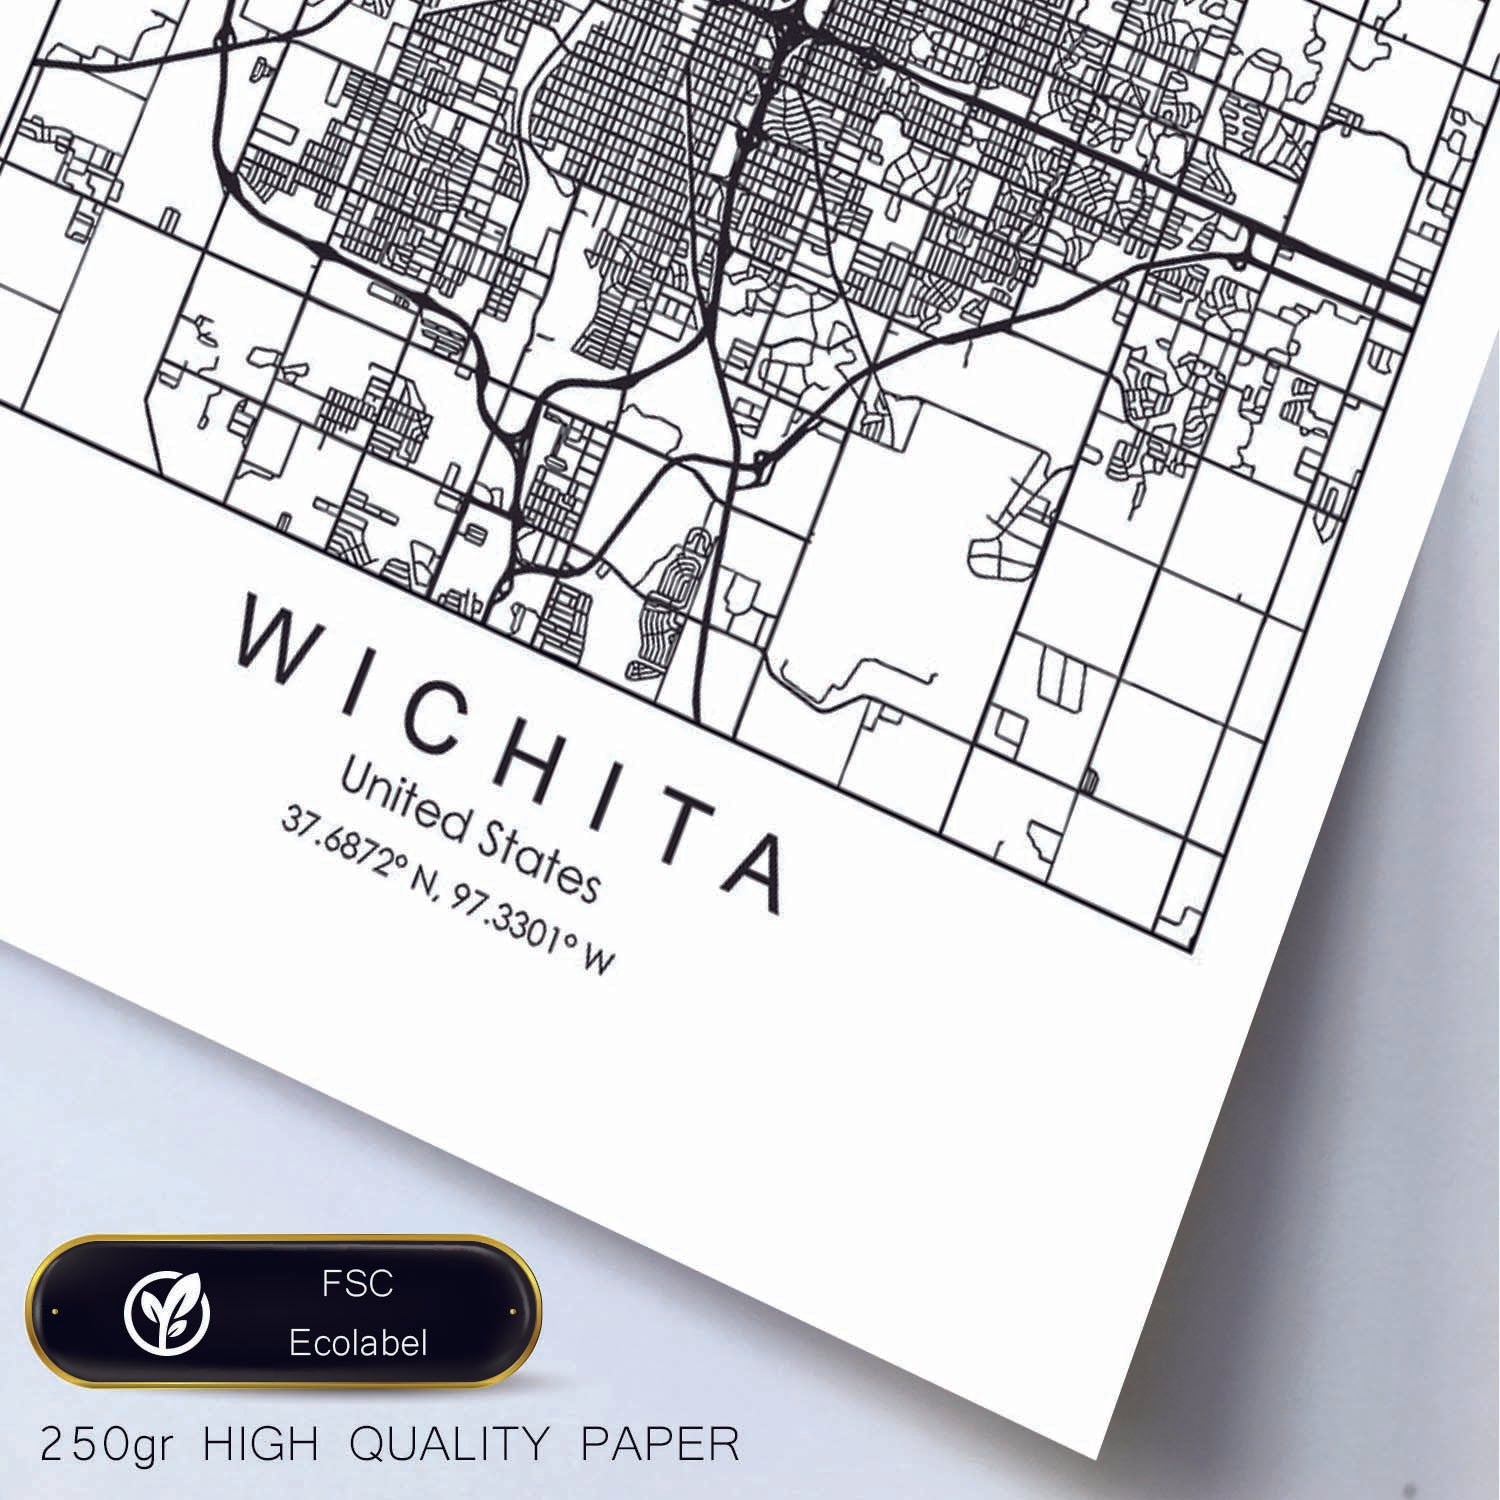 Poster con mapa de Wichita. Lámina de Estados Unidos, con imágenes de mapas y carreteras-Artwork-Nacnic-Nacnic Estudio SL